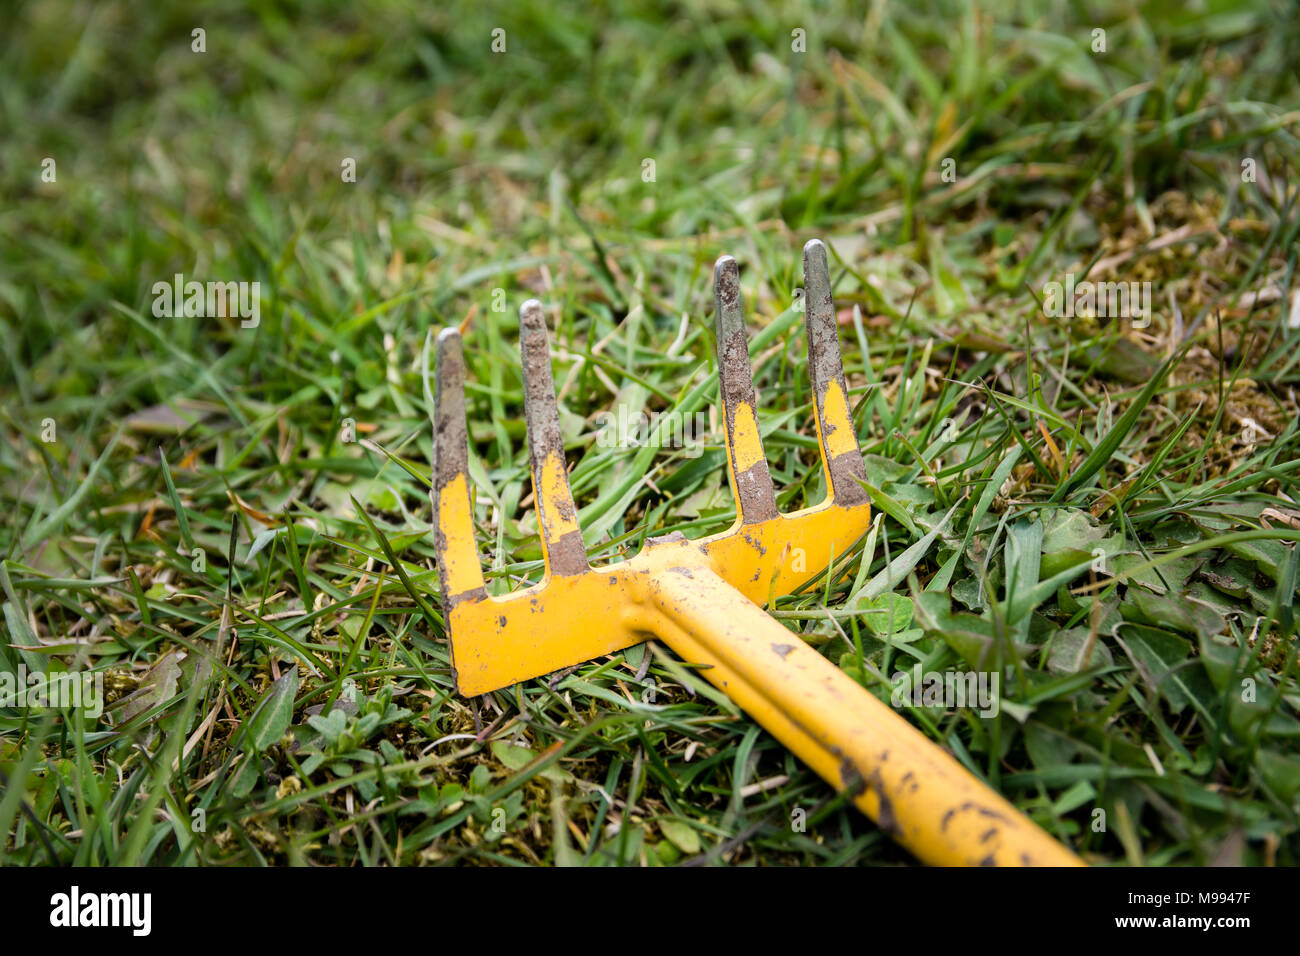 Sarchiatura vecchio utensile o il rastrello con ramo mancante che giace abbandonata in erba verde. Foto Stock